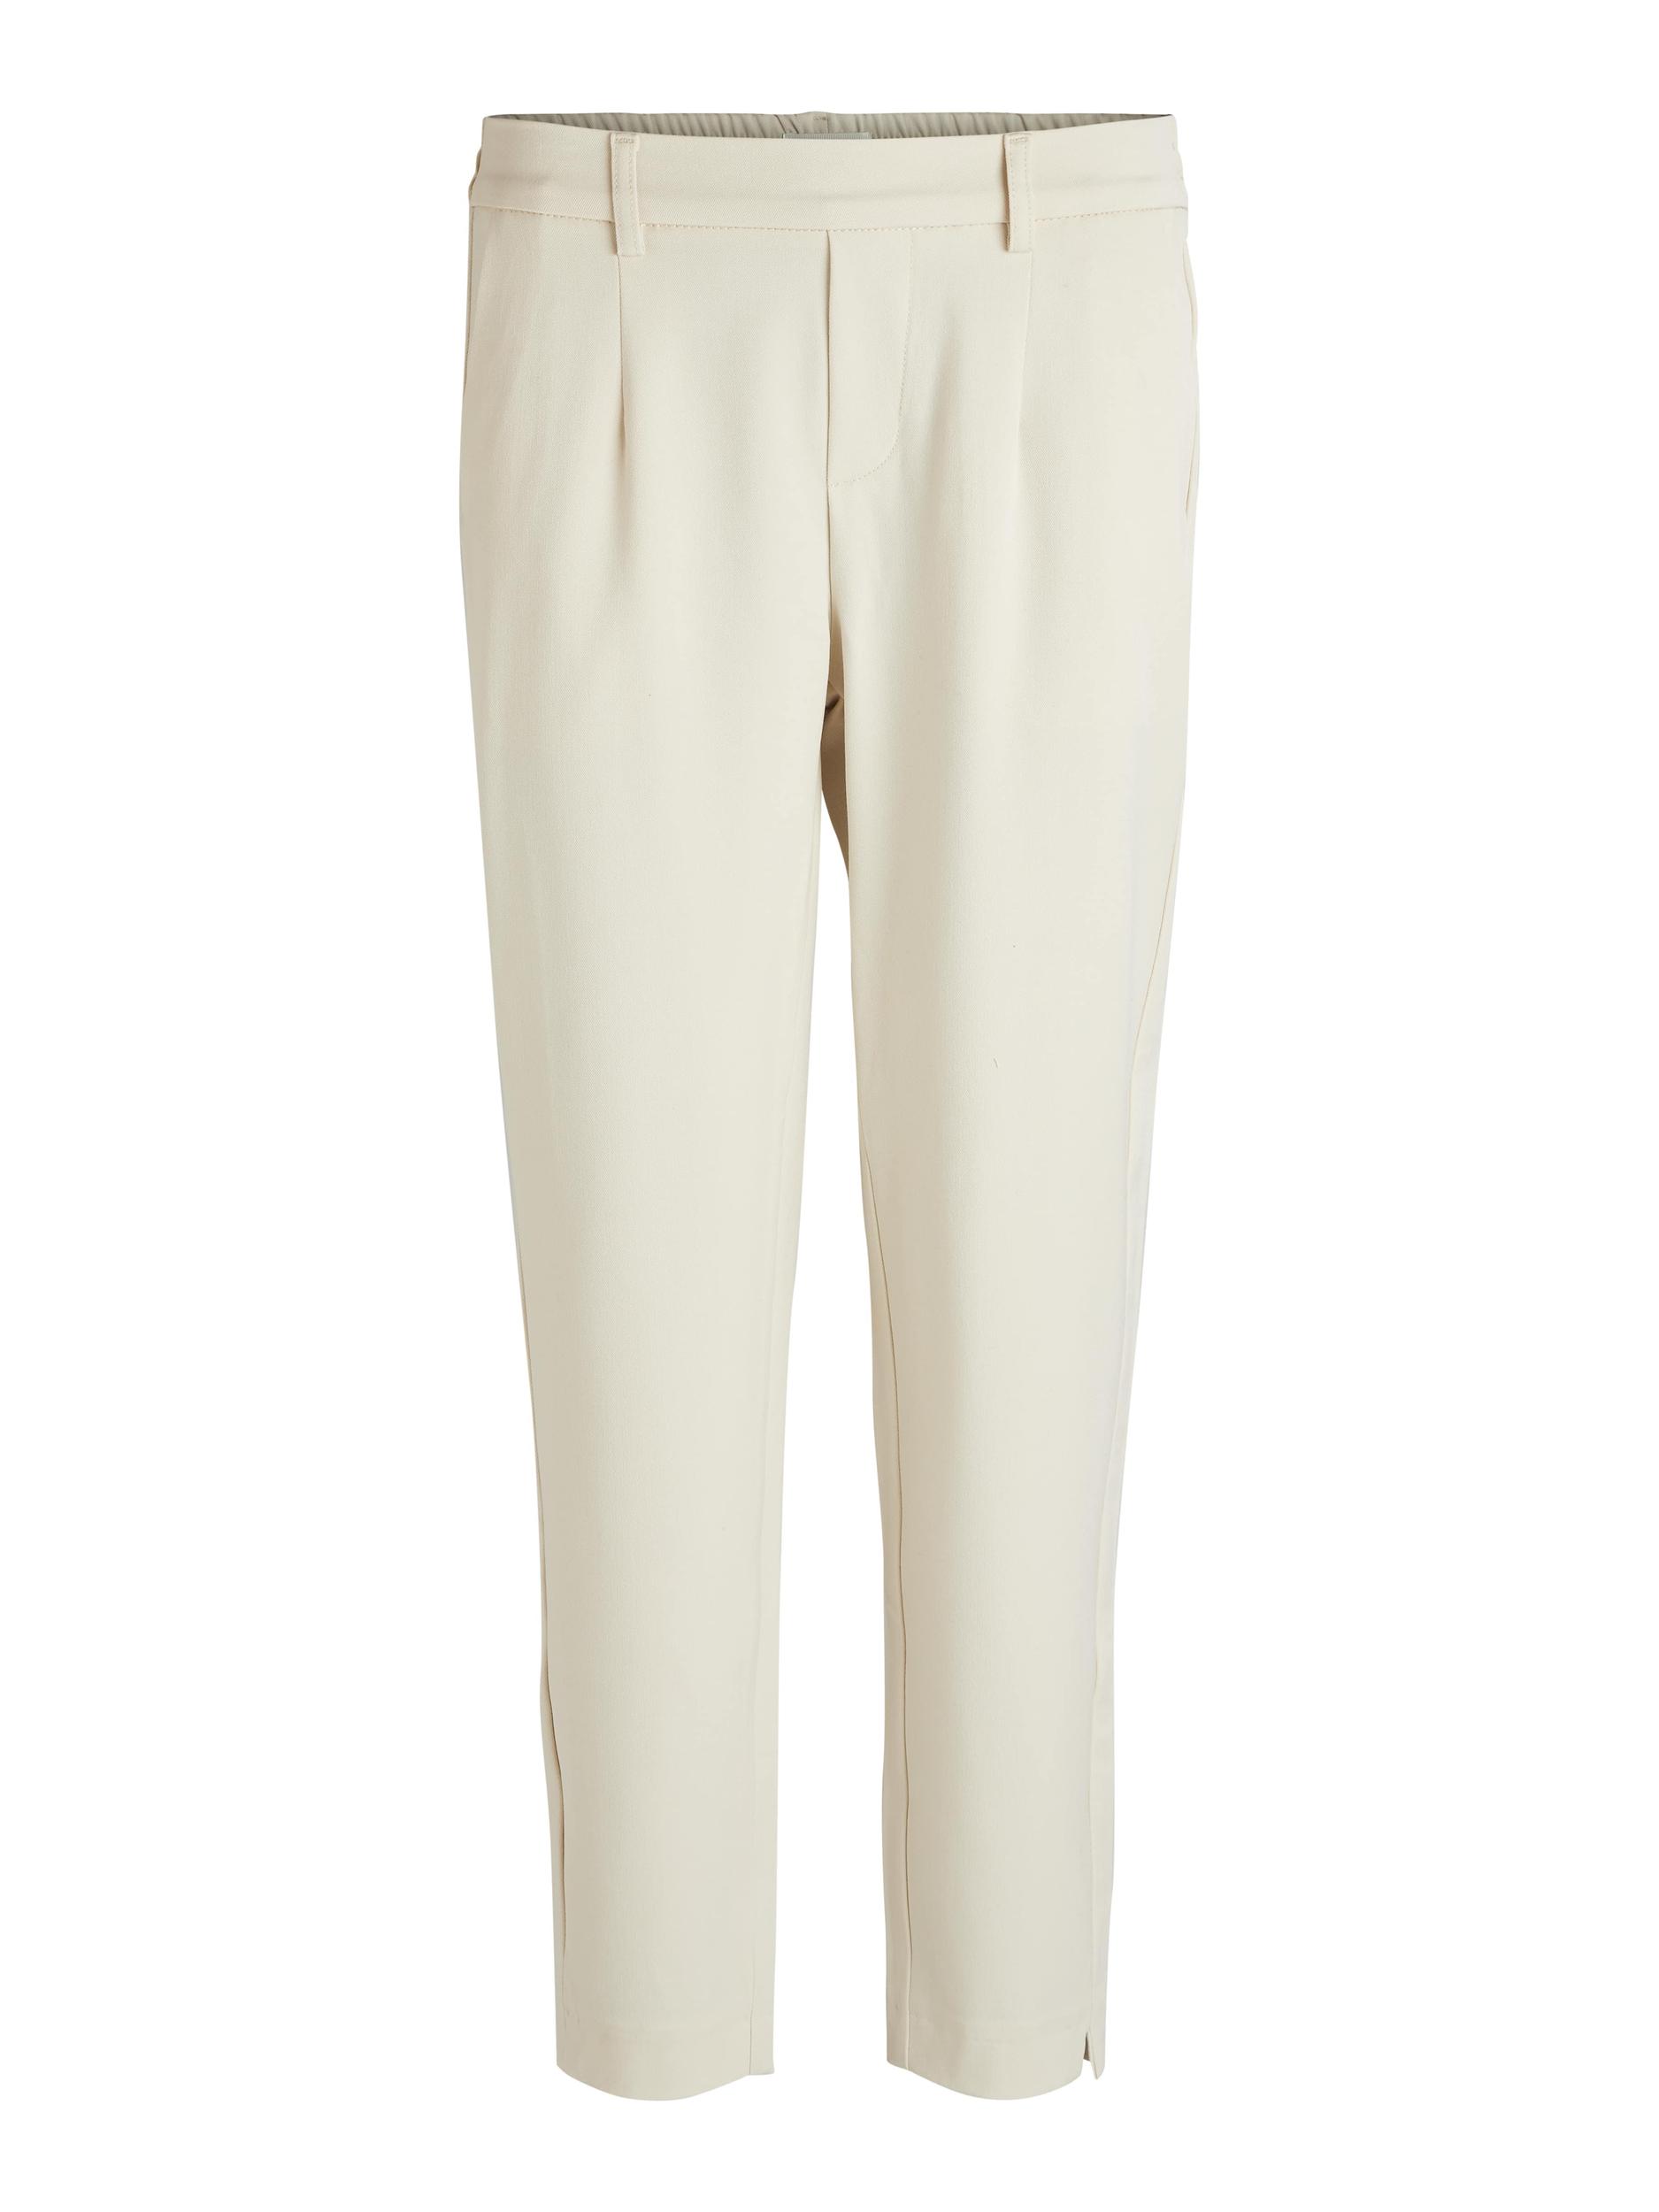 Bukser med brede ben for kvinner Vintage bomulls- og linbukser Uformelle  sommerstrandbukser